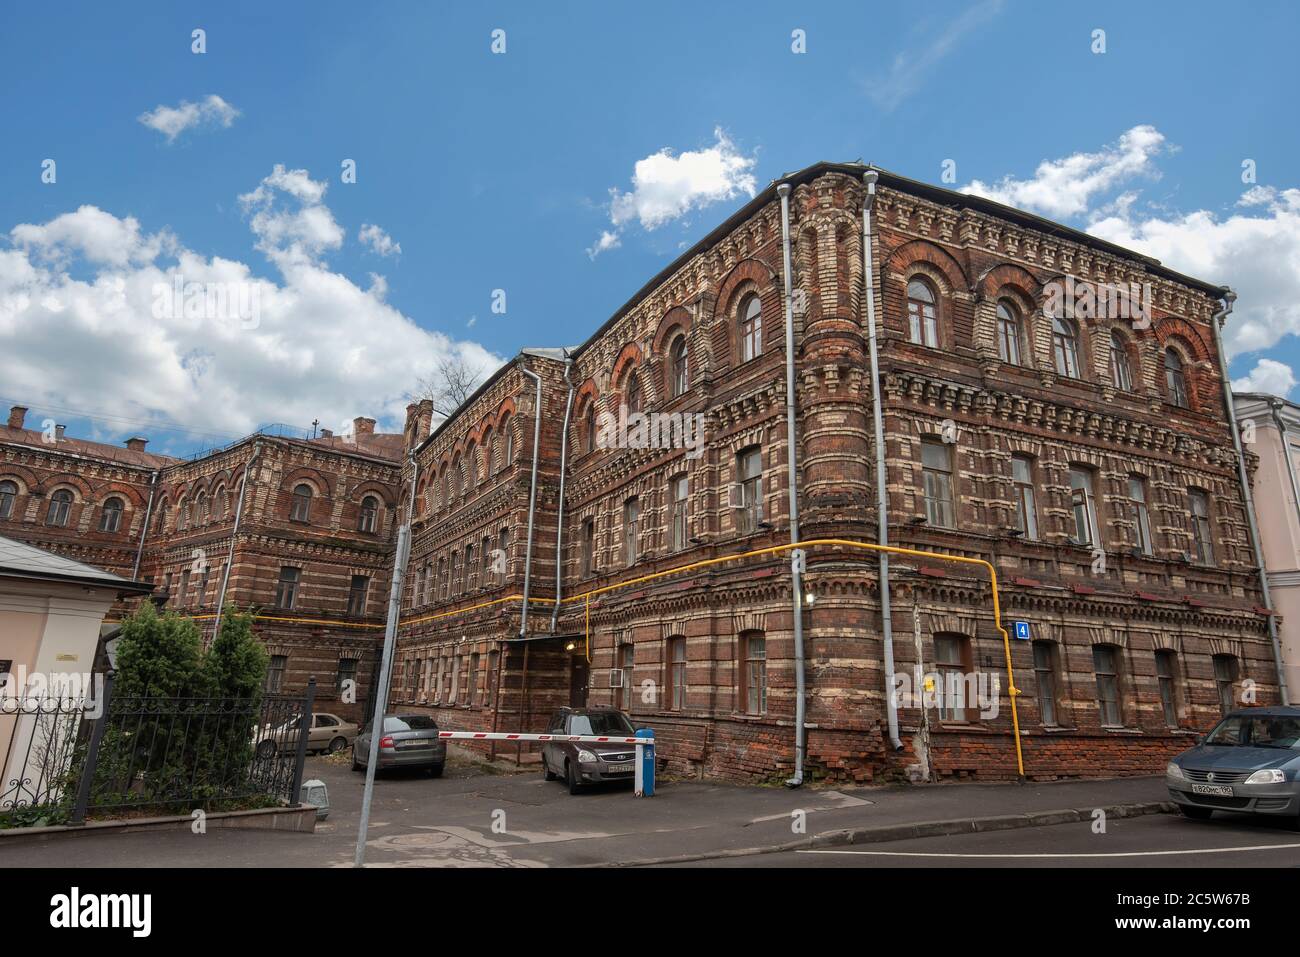 Una facciata dell'edificio in classico stile neo-barocco. Una vecchia casa aristocratica a Mosca, in Russia Foto Stock